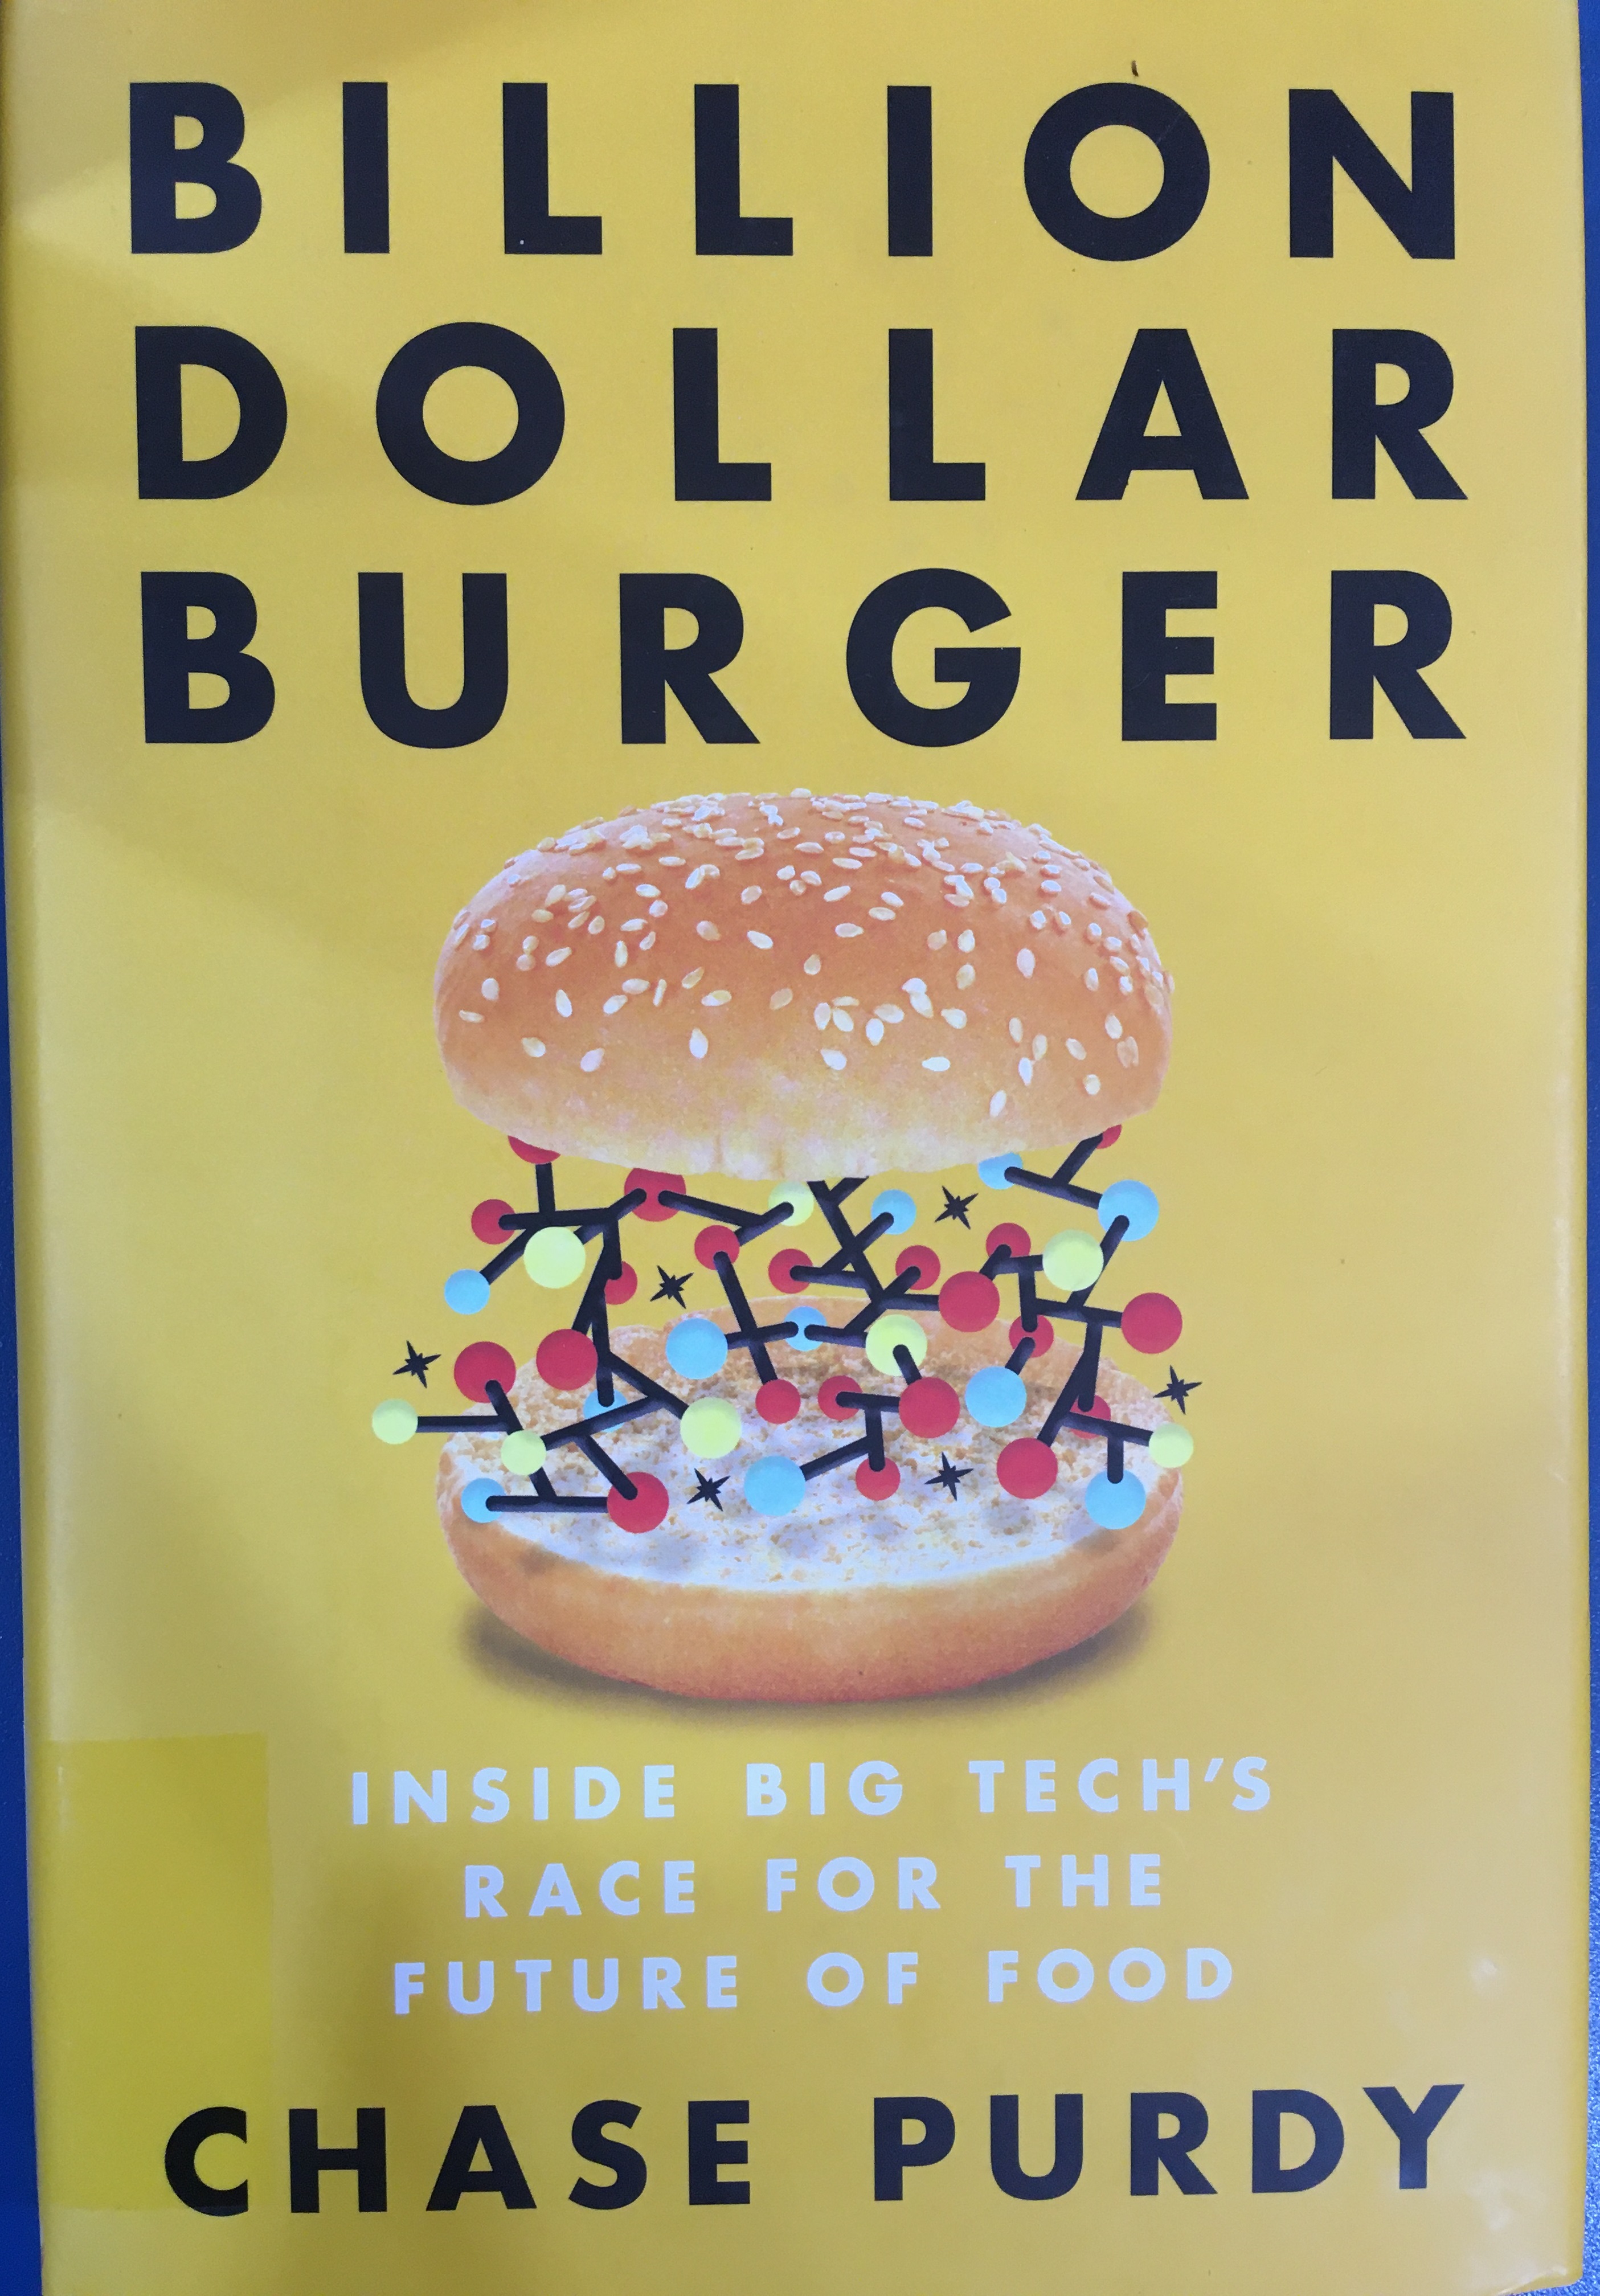 Chase Purdy Billion Dollar Burger című könyv borítója